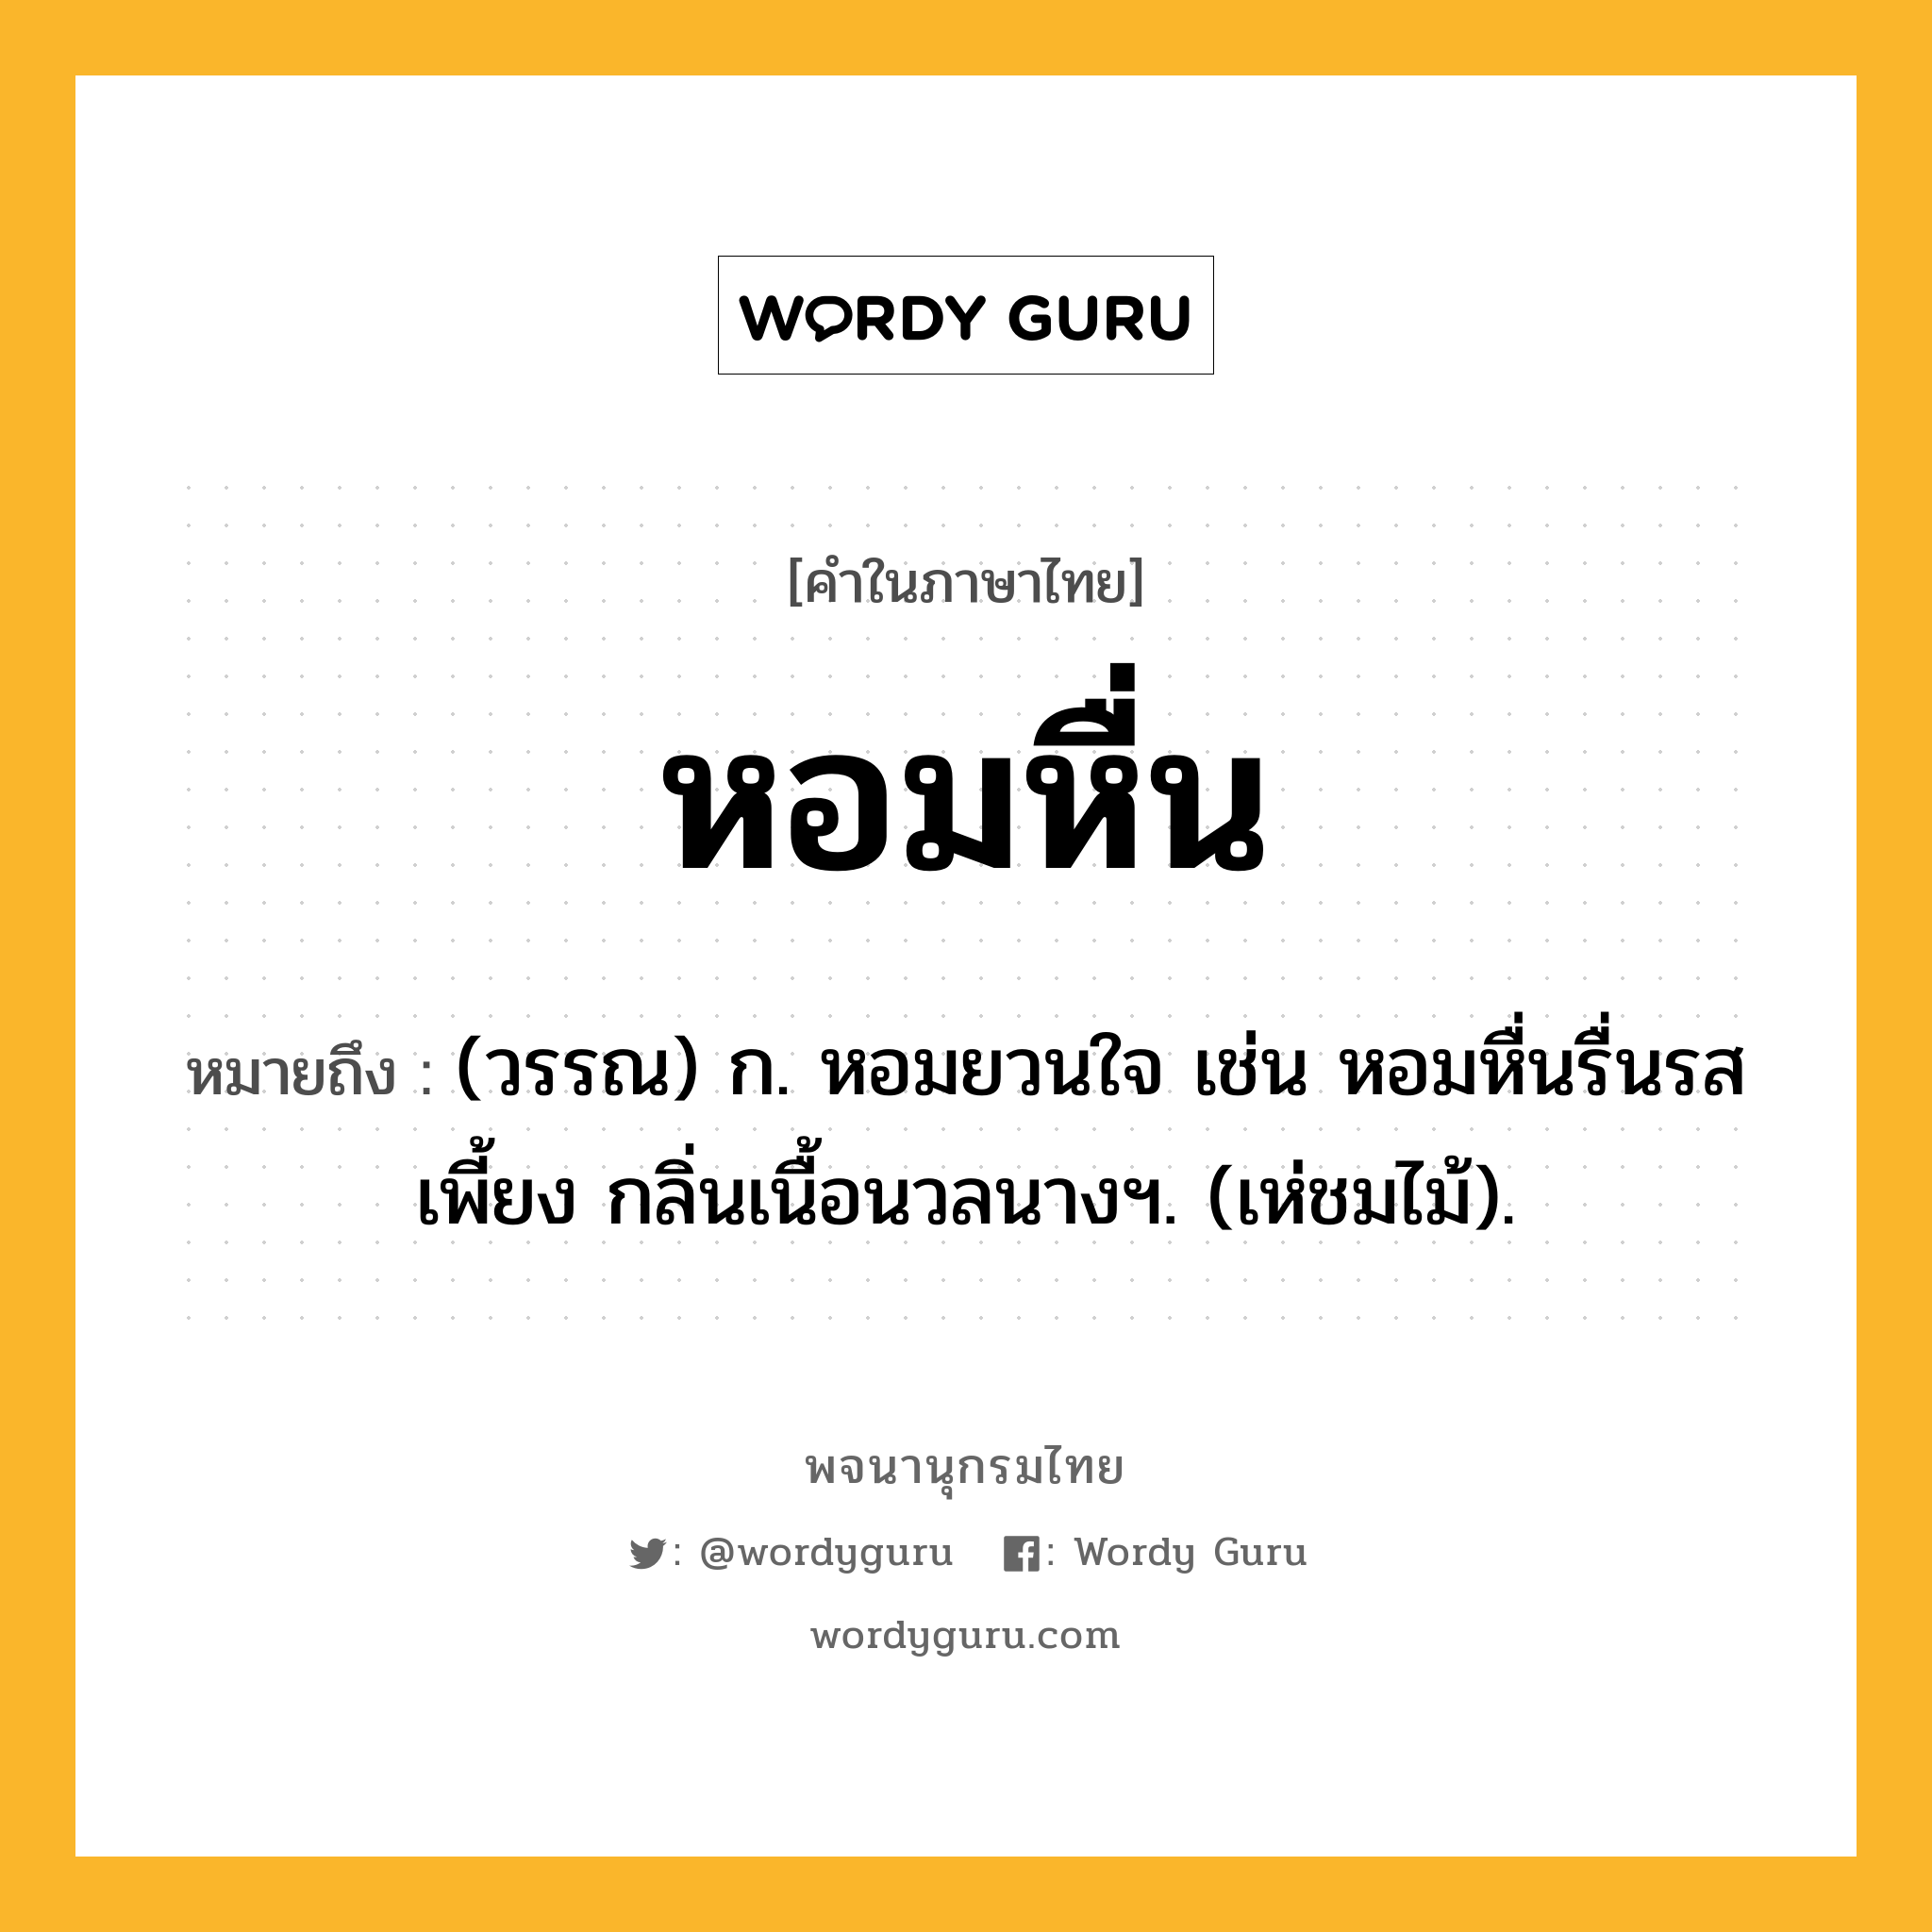 หอมหื่น ความหมาย หมายถึงอะไร?, คำในภาษาไทย หอมหื่น หมายถึง (วรรณ) ก. หอมยวนใจ เช่น หอมหื่นรื่นรสเพี้ยง กลิ่นเนื้อนวลนางฯ. (เห่ชมไม้).